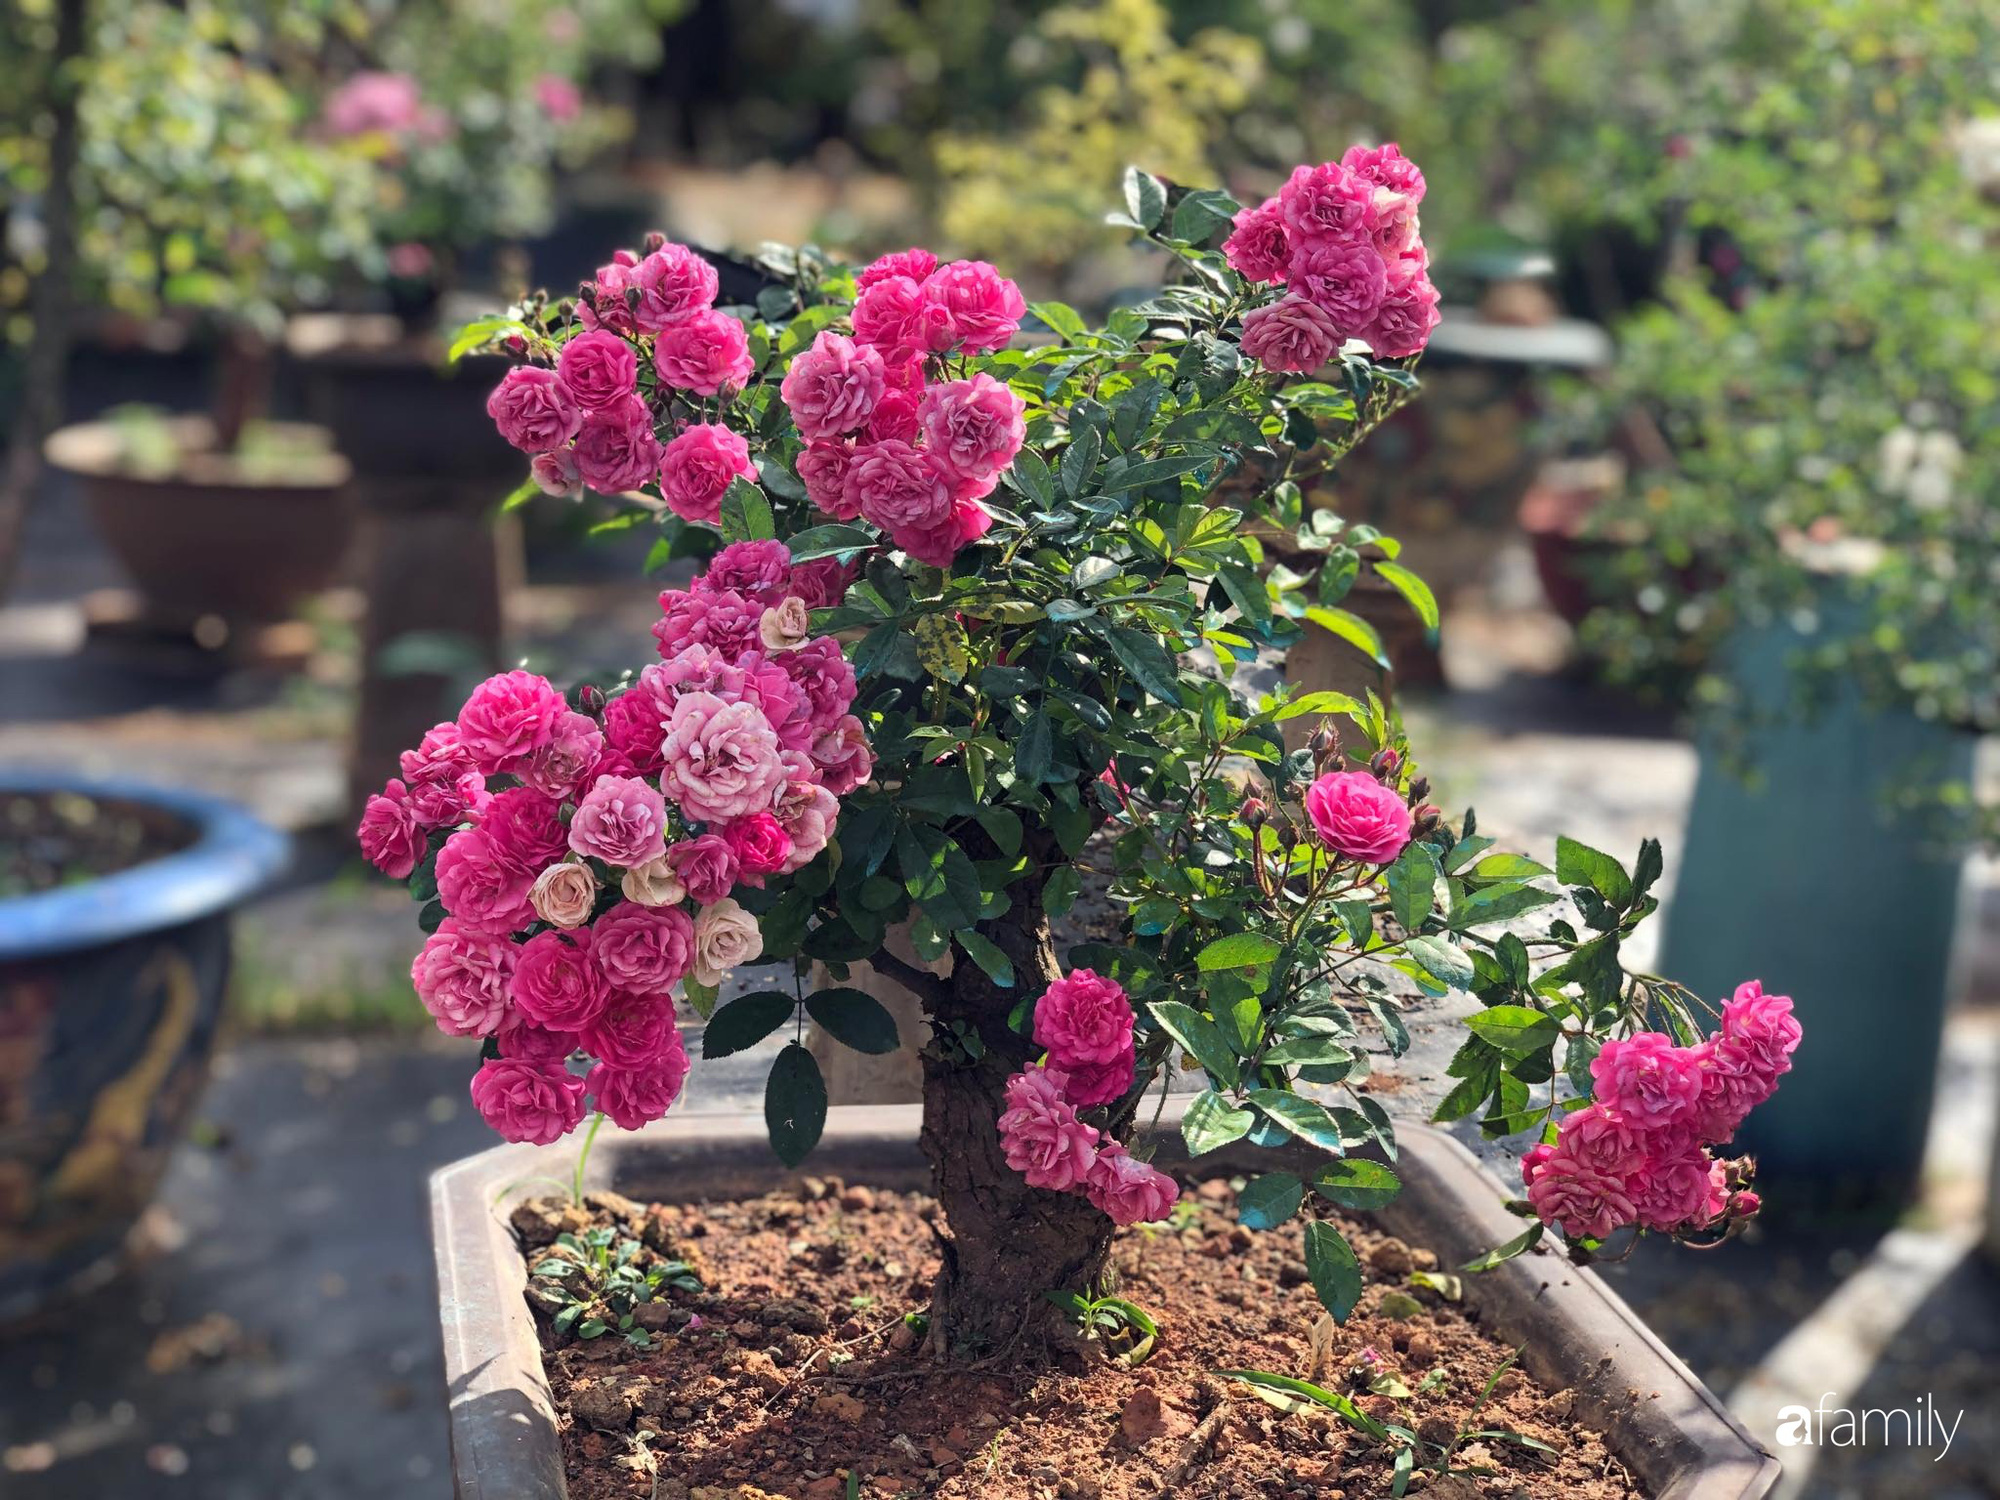 Ngắm vườn hồng bonsai tiền tỉ rực rỡ tỏa hương trên đồi núi ở Đà Lạt - Ảnh 17.